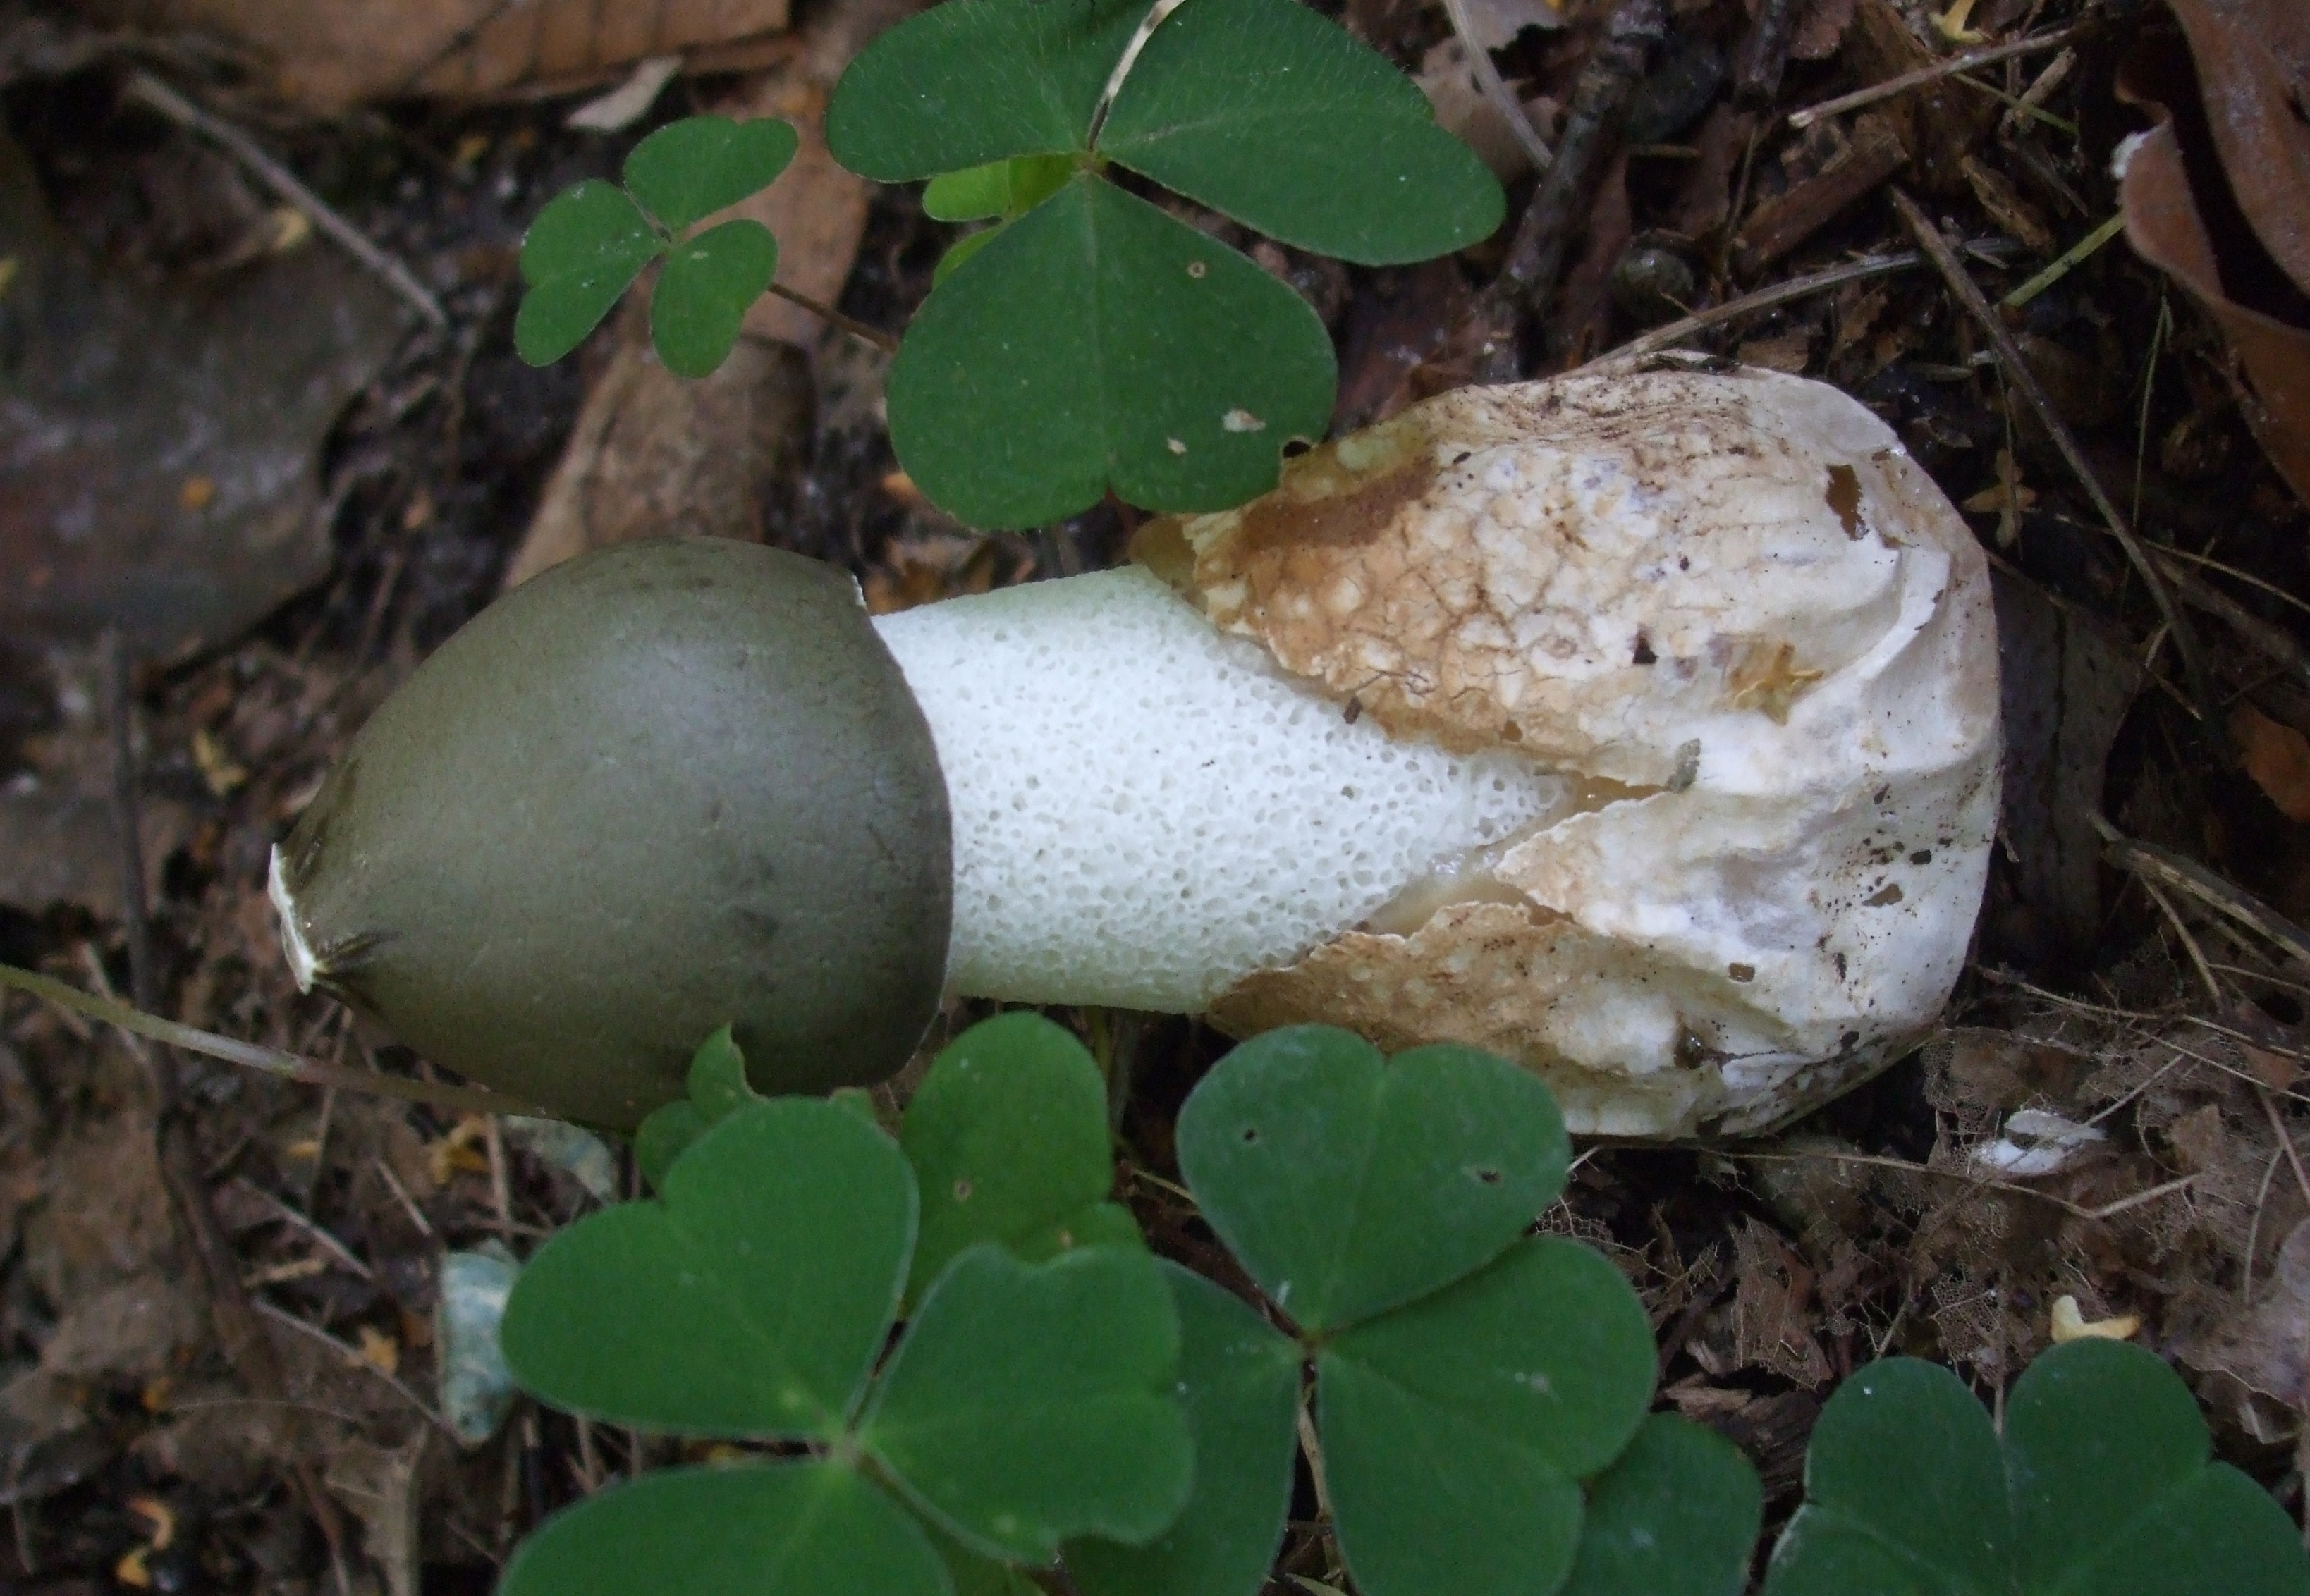 Веселки грибы фото и лечебные свойства и противопоказания